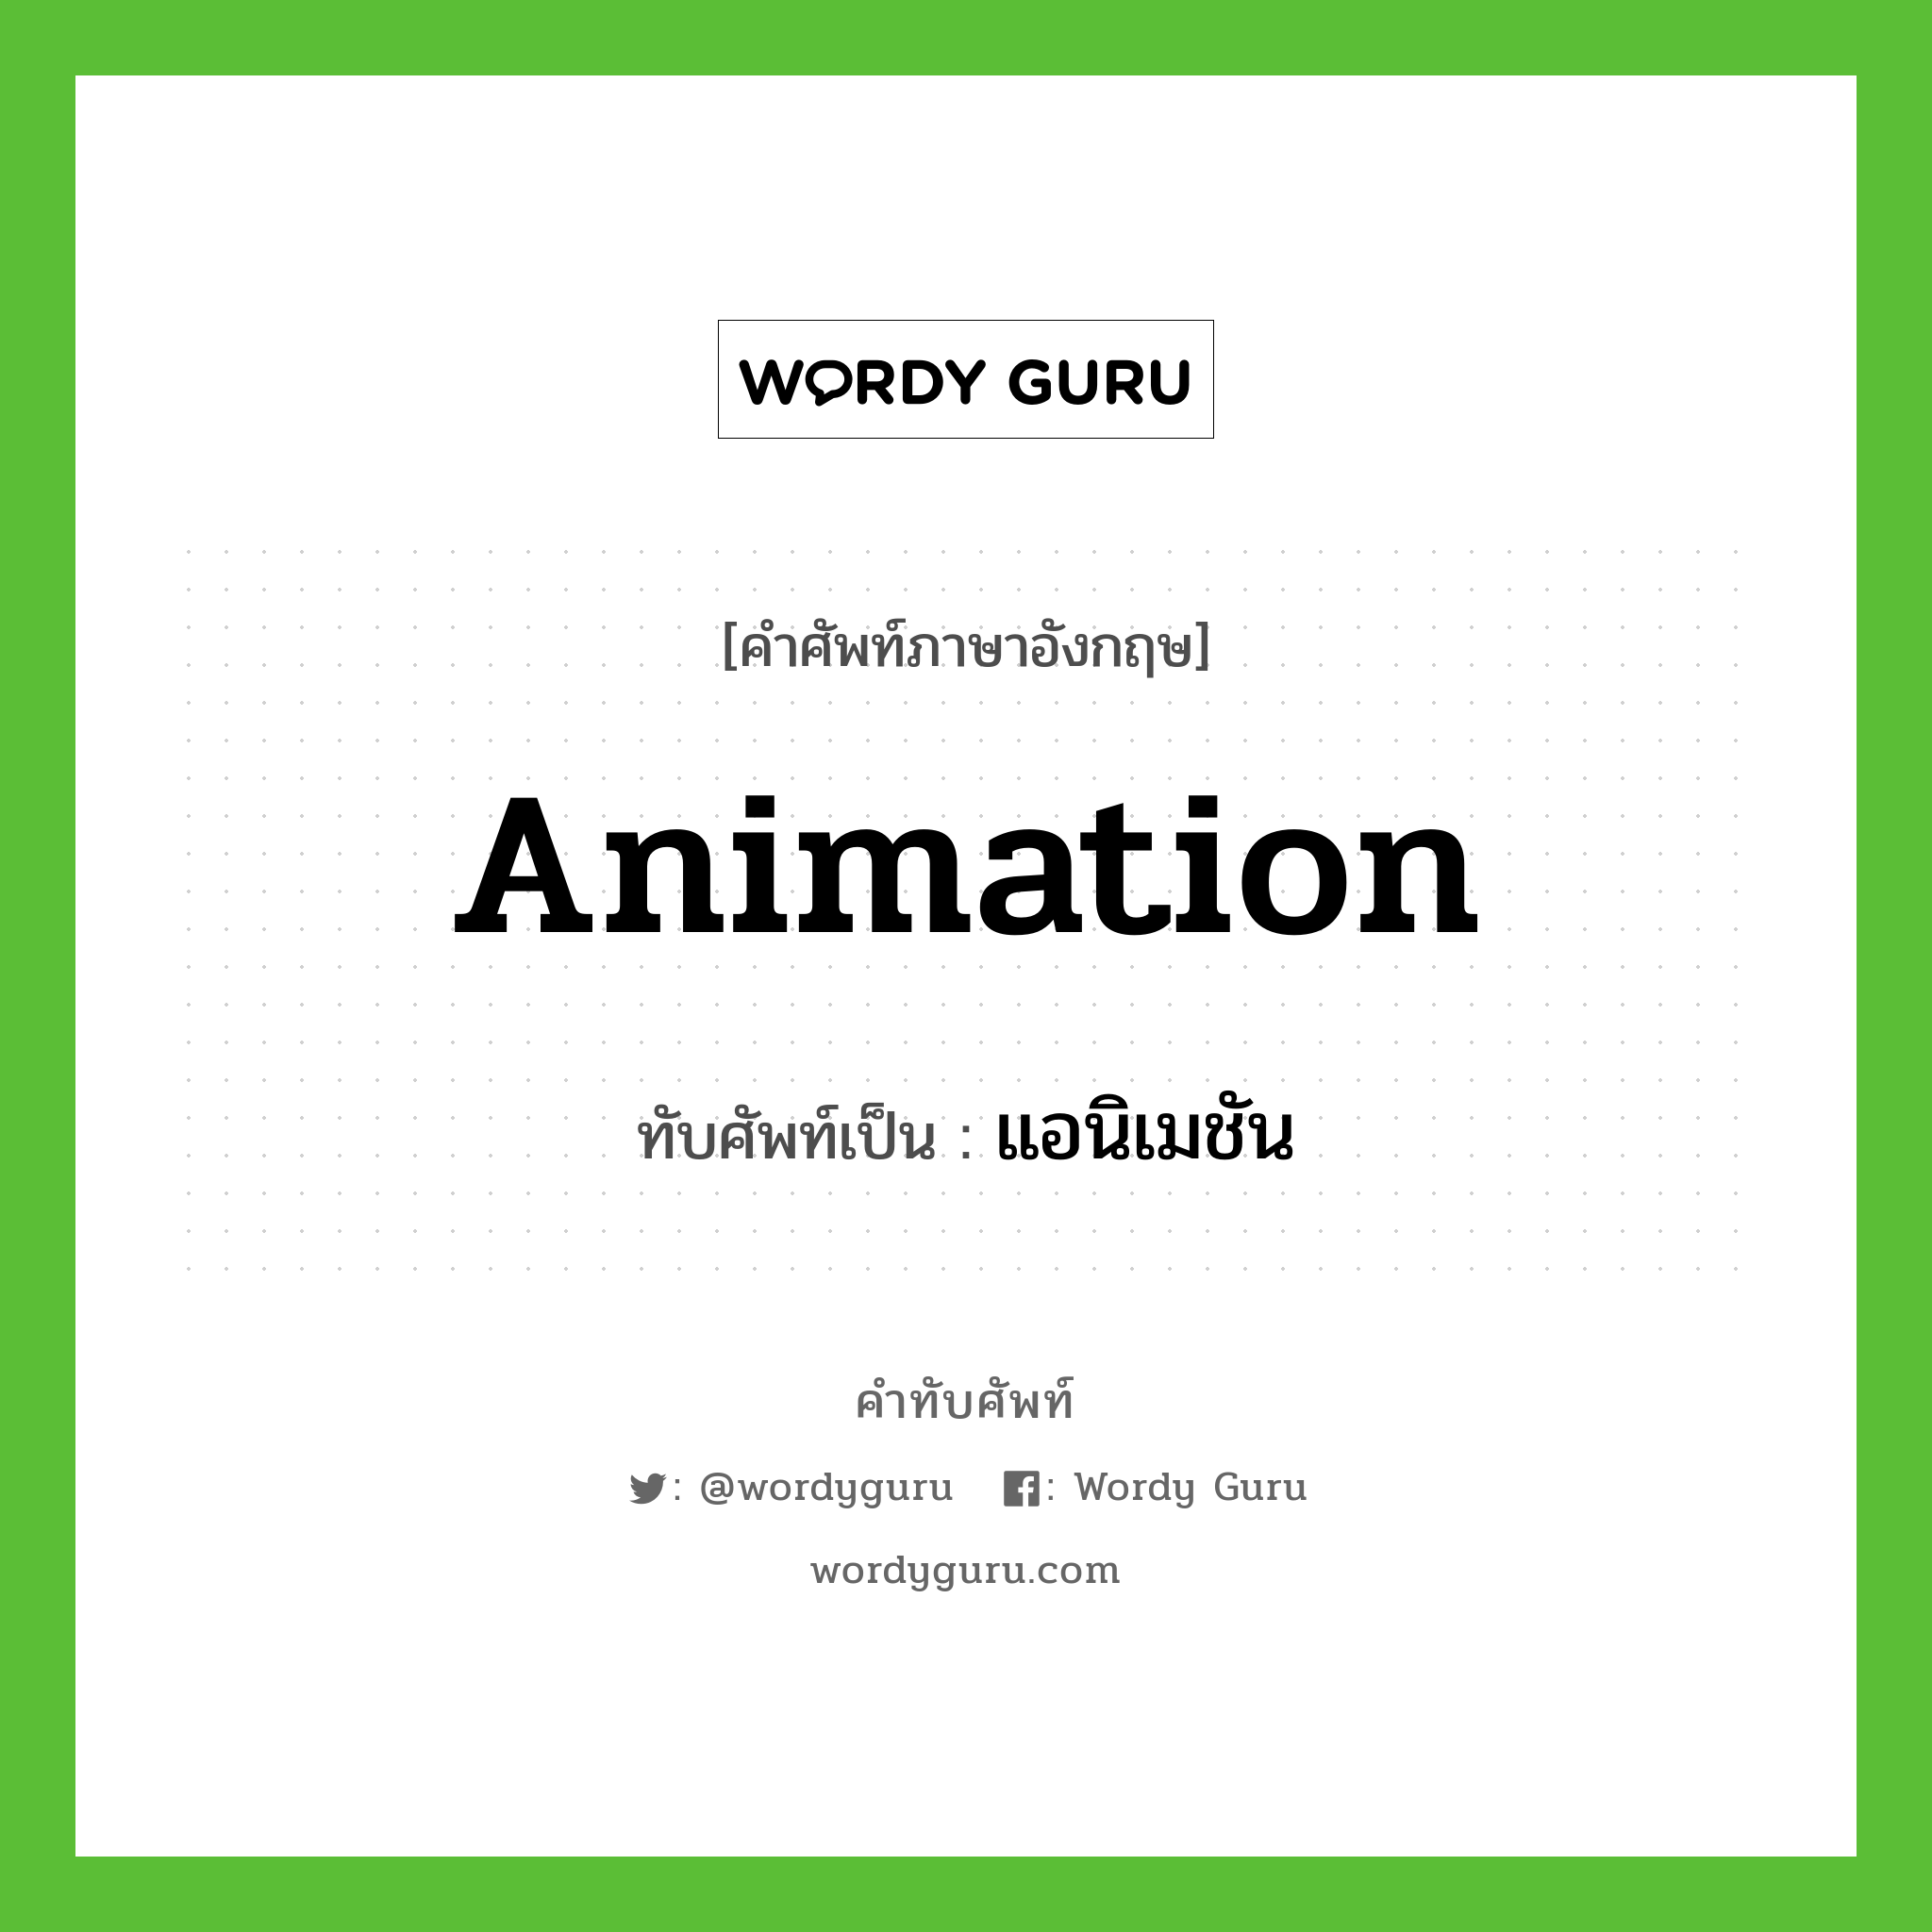 แอนิเมชัน เขียนอย่างไร?, คำศัพท์ภาษาอังกฤษ แอนิเมชัน ทับศัพท์เป็น animation